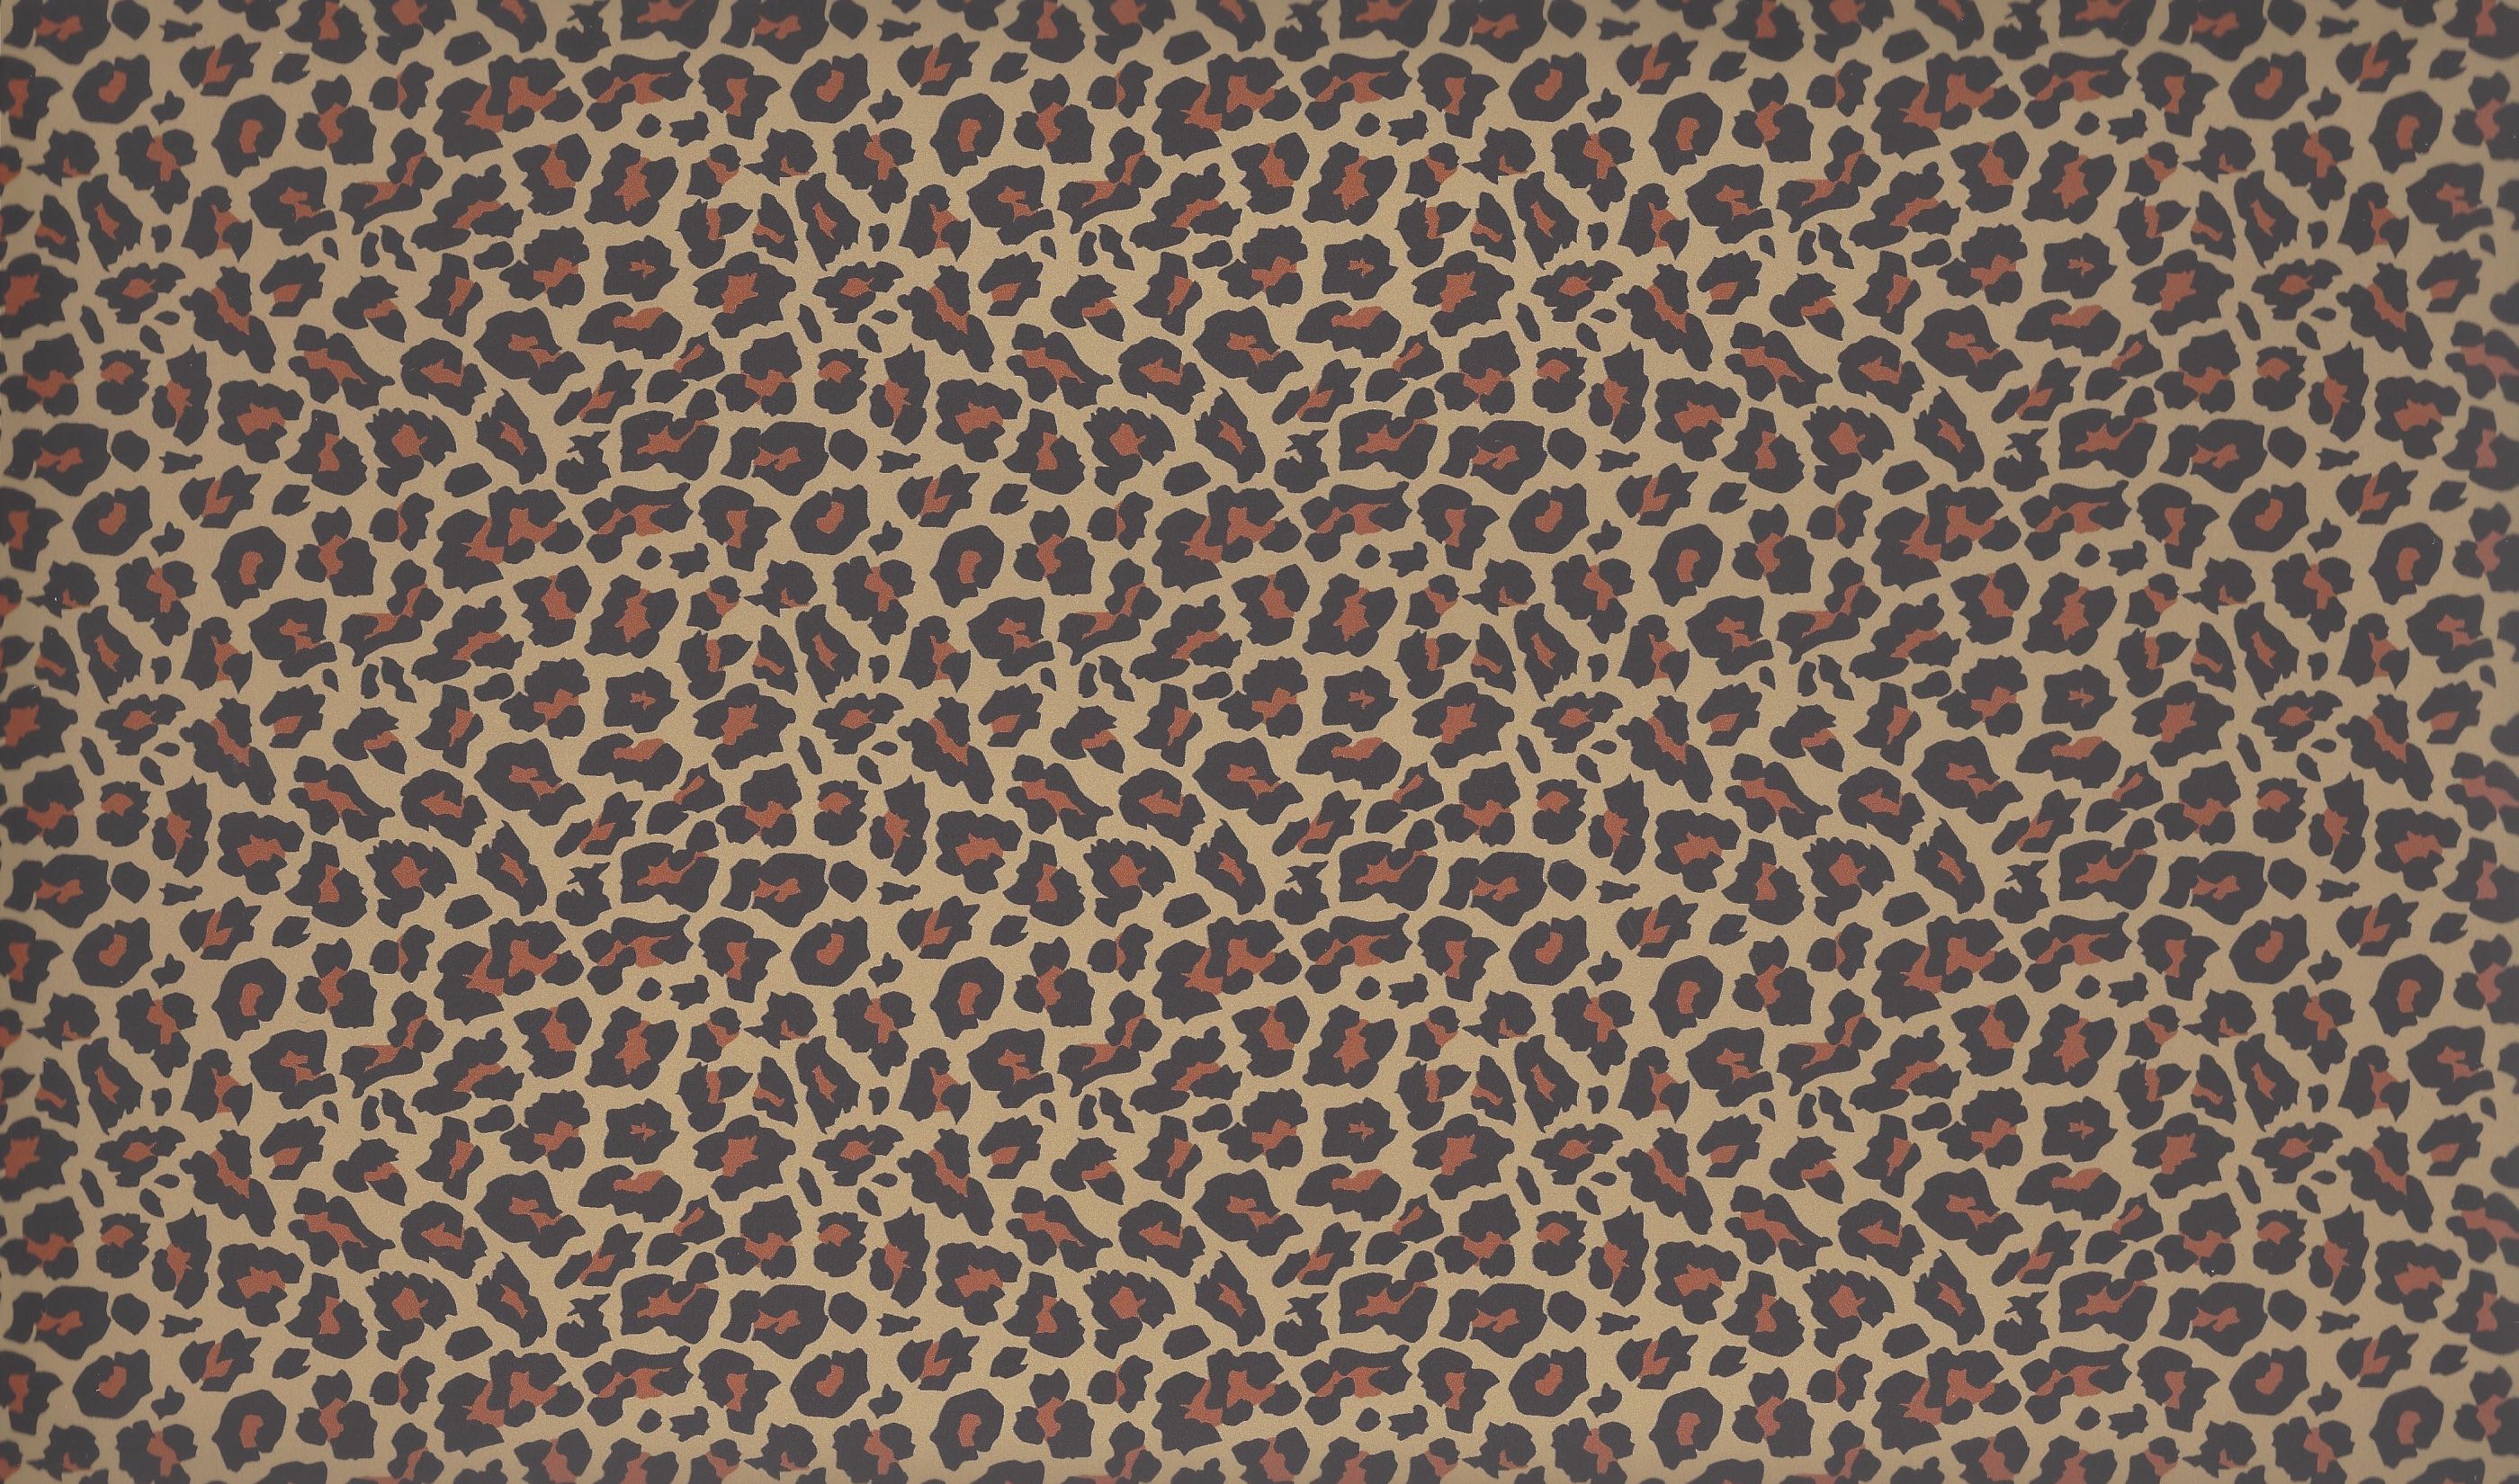 Leopard Print Texture Sheet